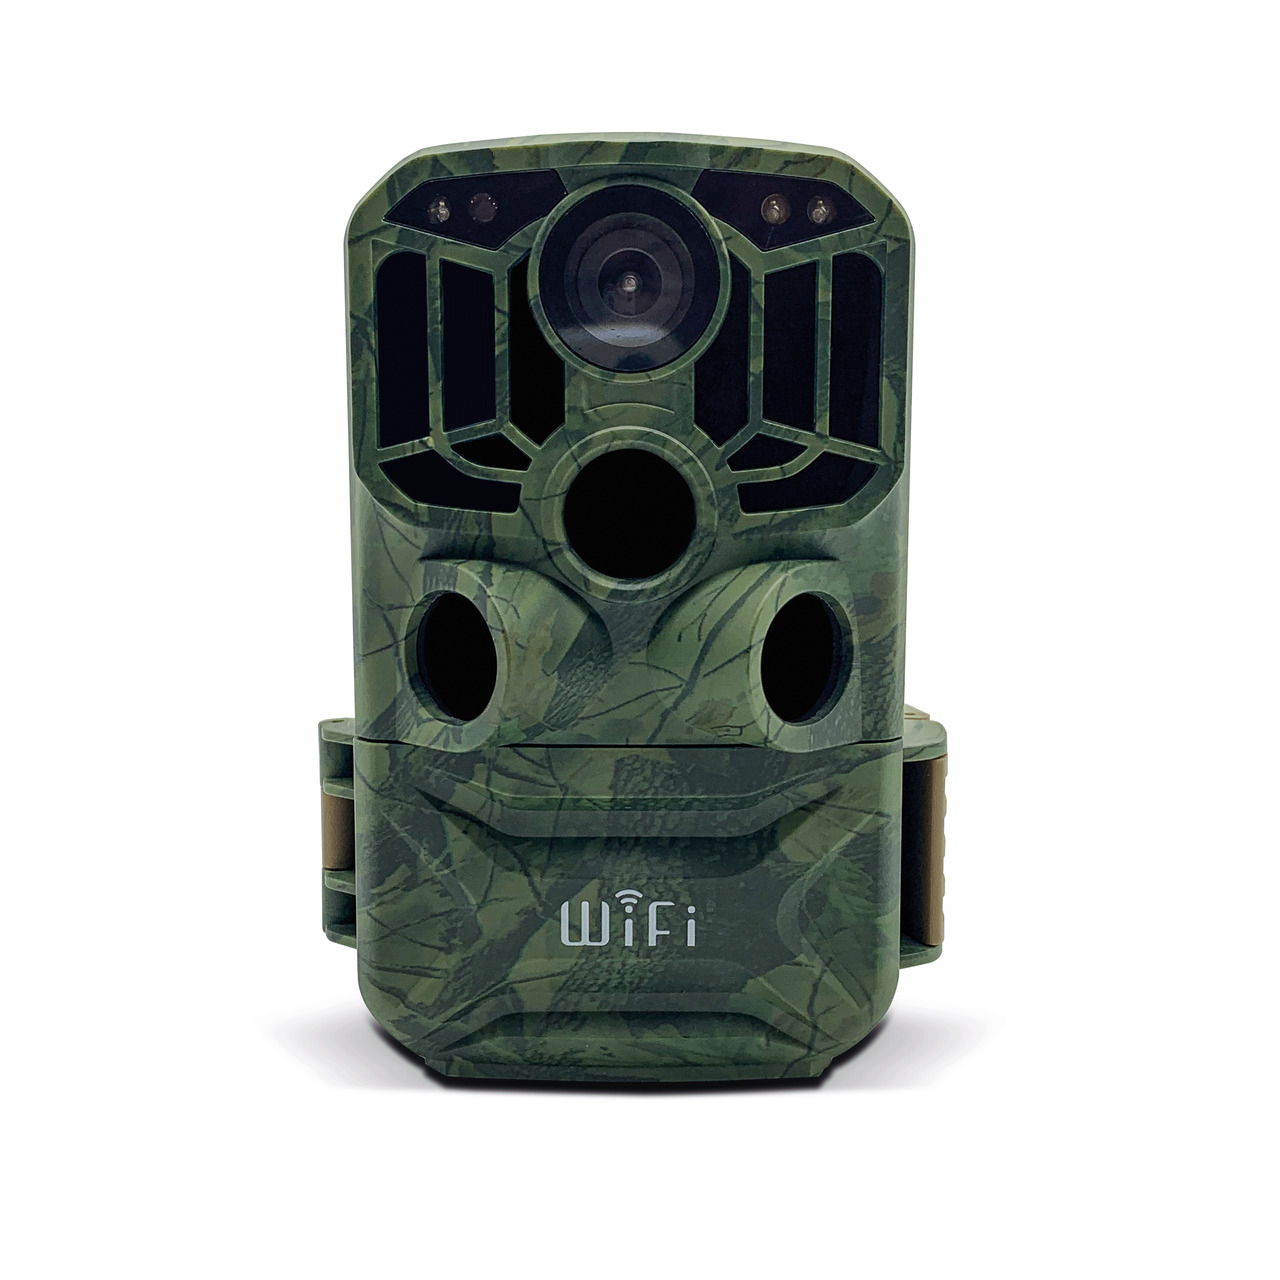 Braun Fotofalle - Wildkamera Scouting Cam BLACK800 WiFi- Auslösezeit 0-6 s- IP66 unter Sicherheitstechnik